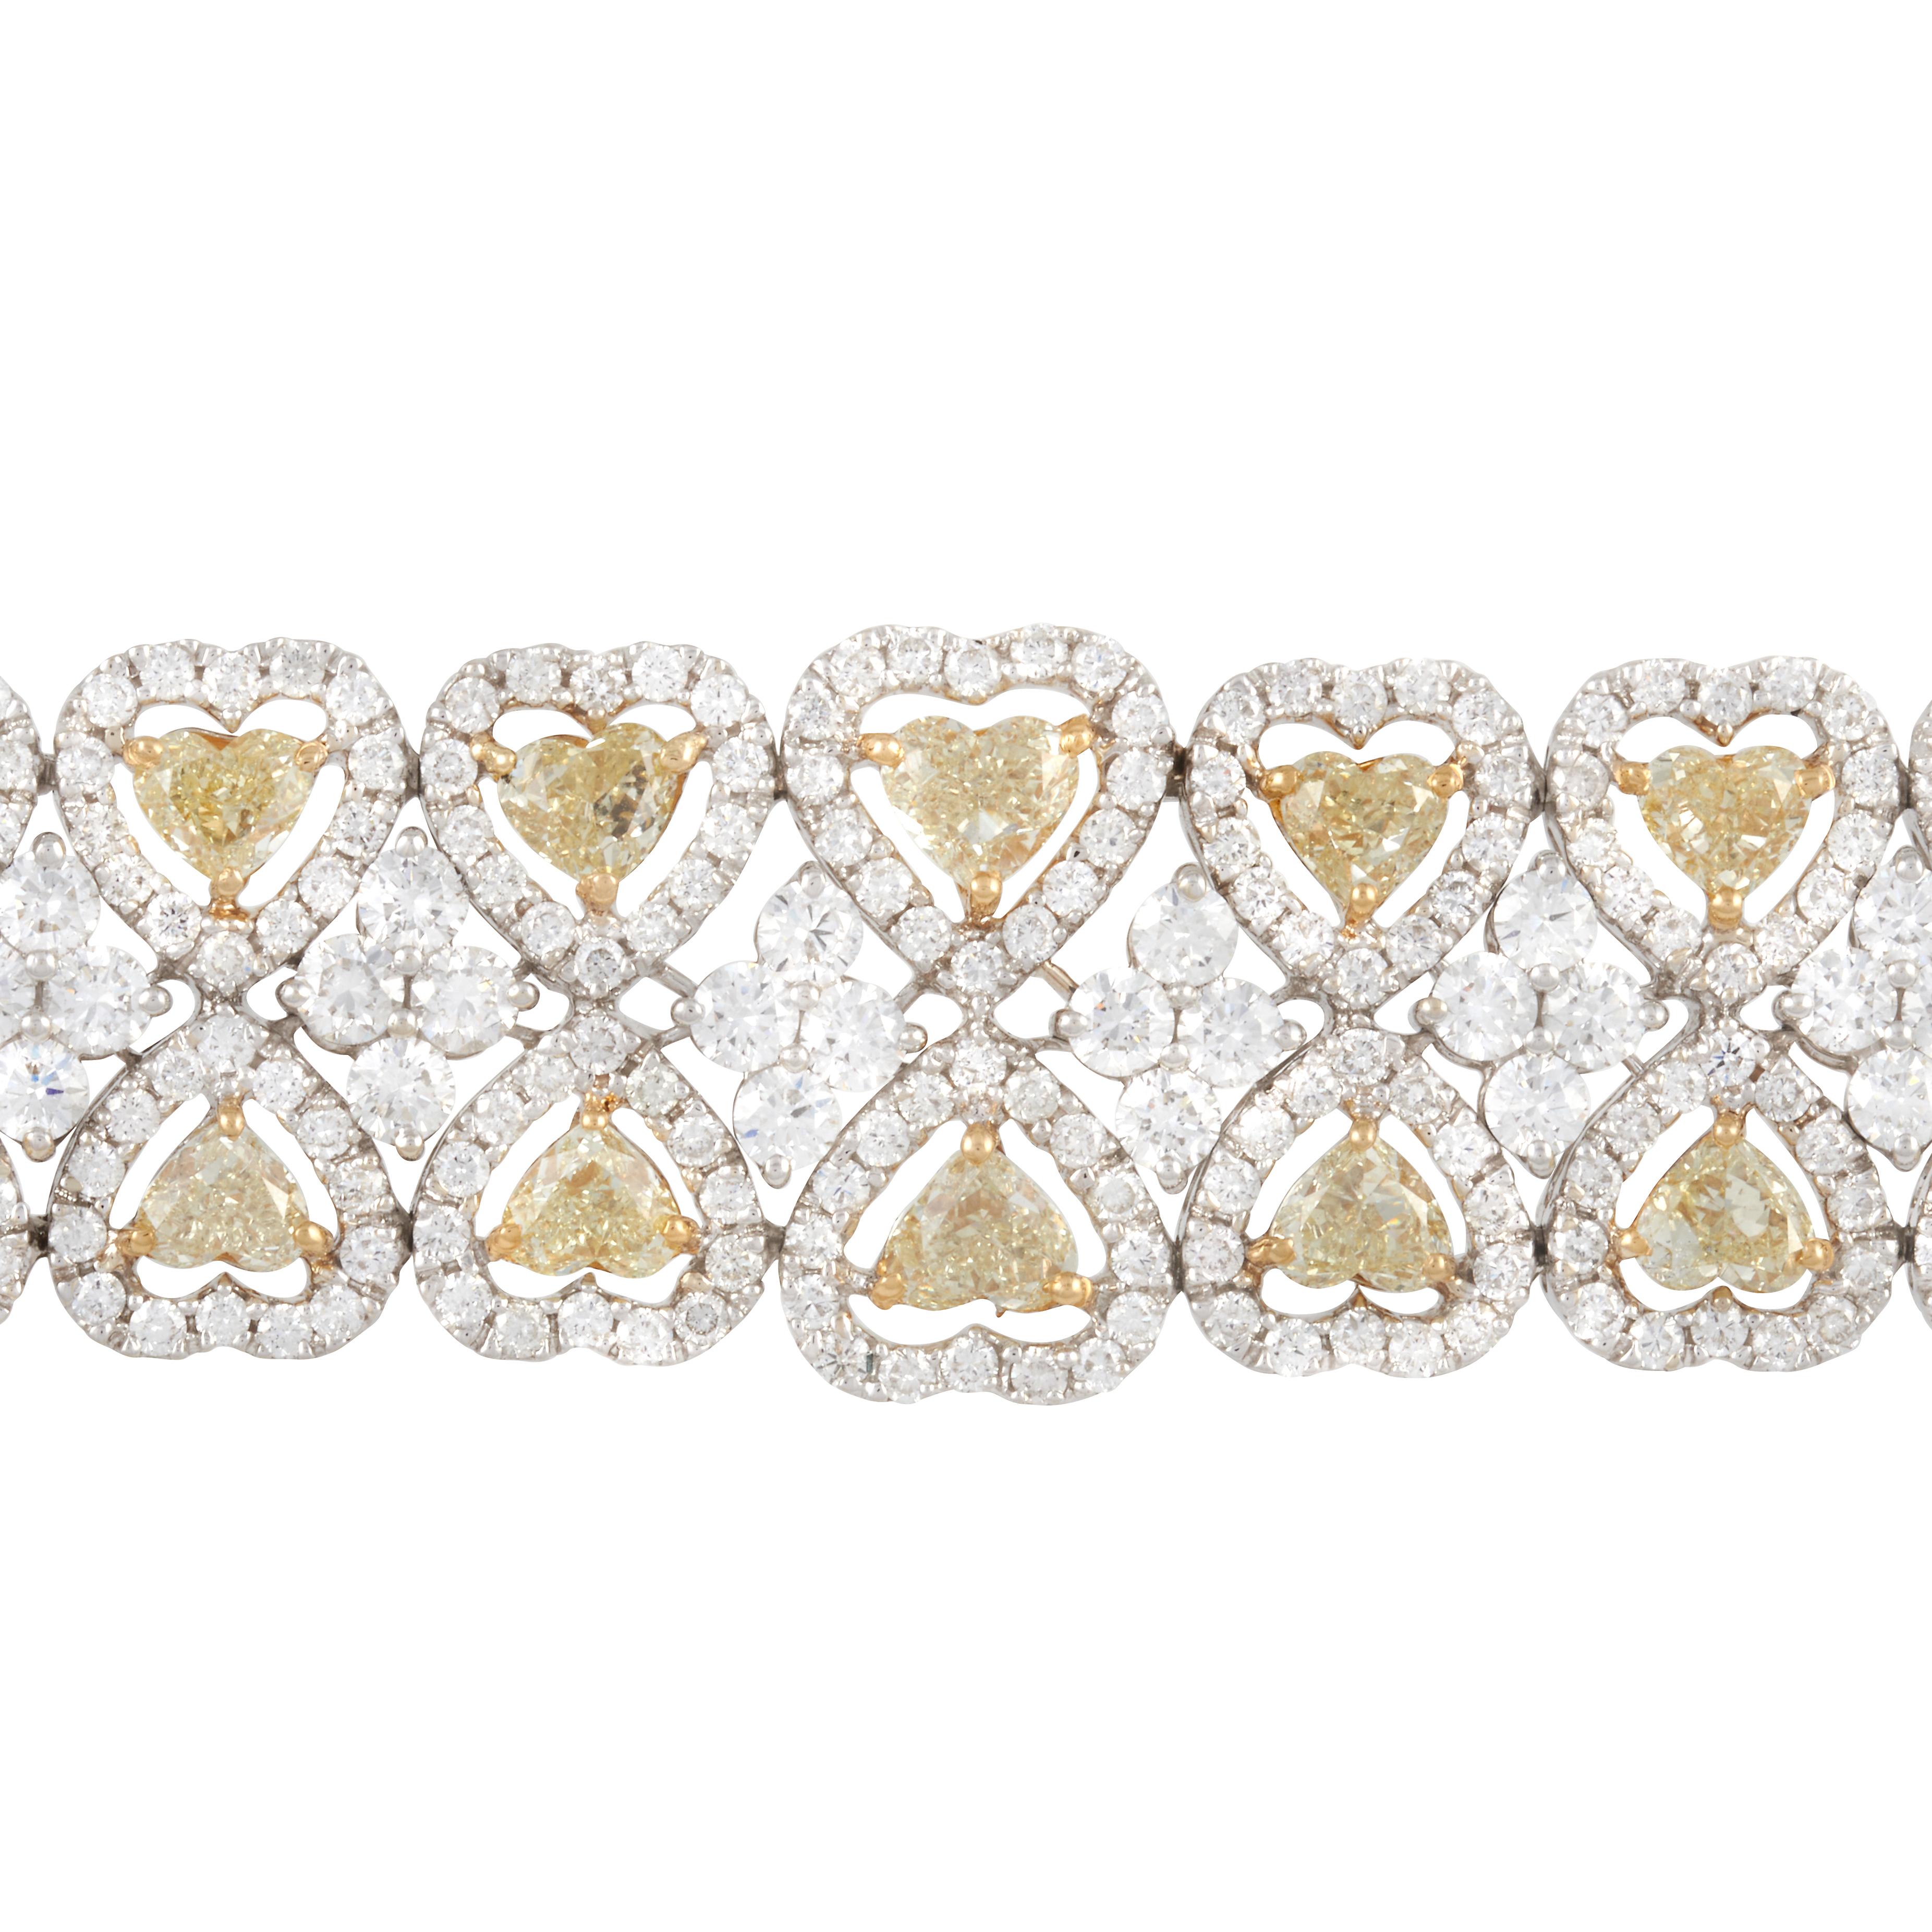 Bracelet en or blanc et jaune 18 carats avec deux rangées de diamants en forme de cœur avec halos de diamants blancs. Il y a 38 diamants jaunes fantaisie en forme de cœur qui pèsent environ 13,50 carats avec une clarté VS. Il y a 612 diamants blancs